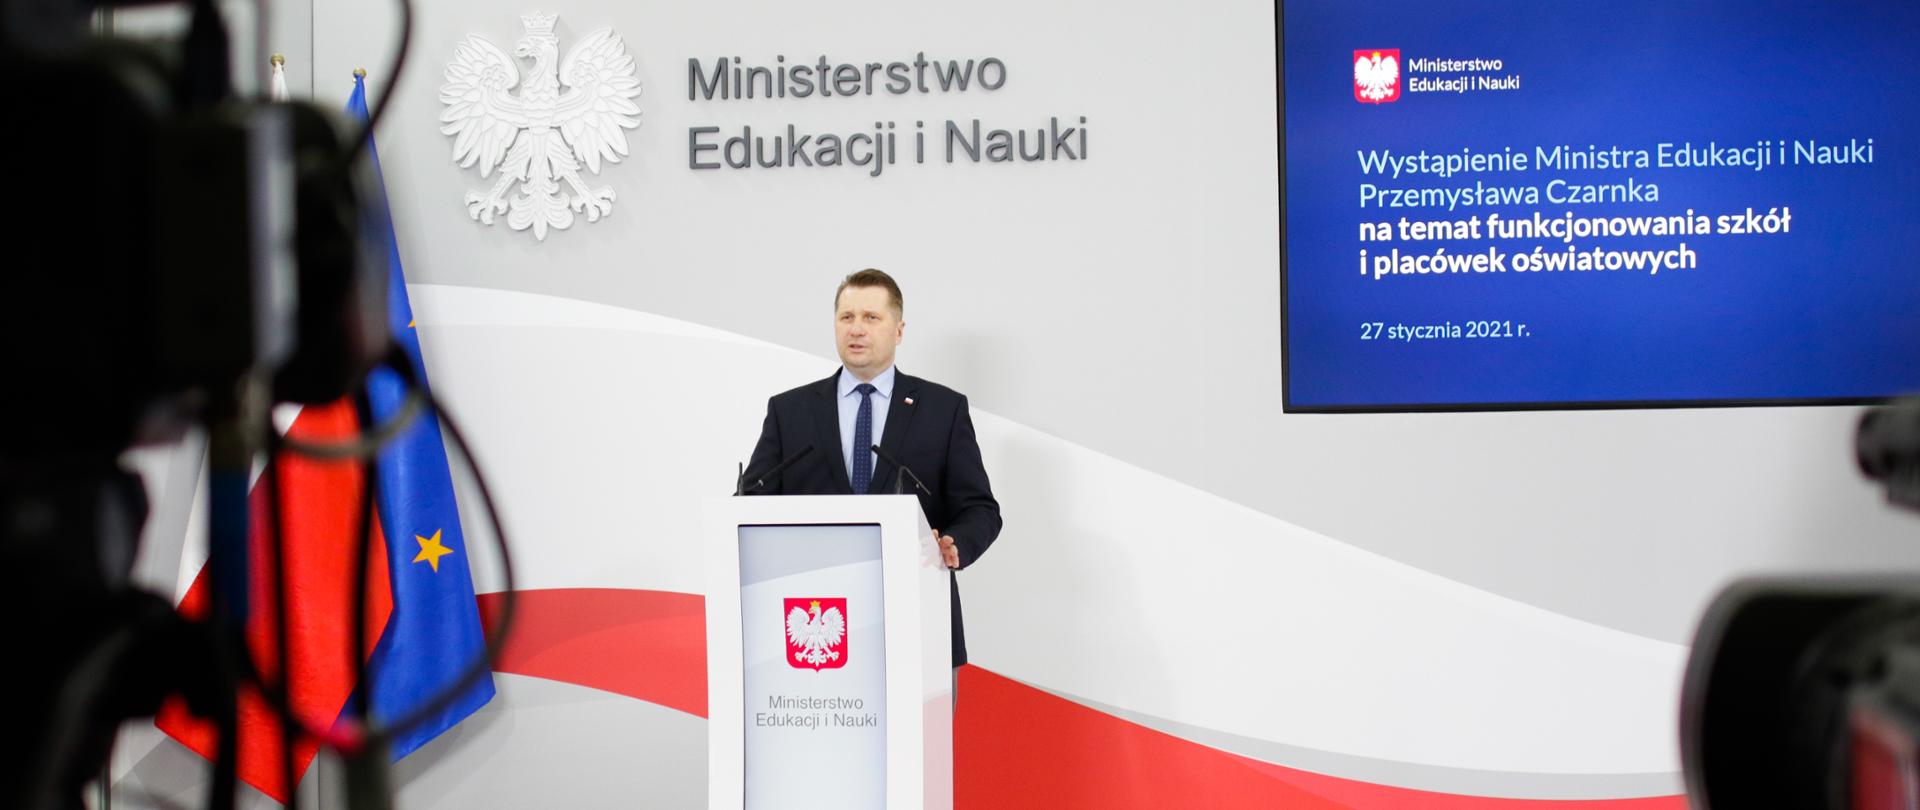 Wystąpienie Ministra Edukacji i Nauki Przemysława Czarnka na temat funkcjonowania szkół i placówek oświatowych